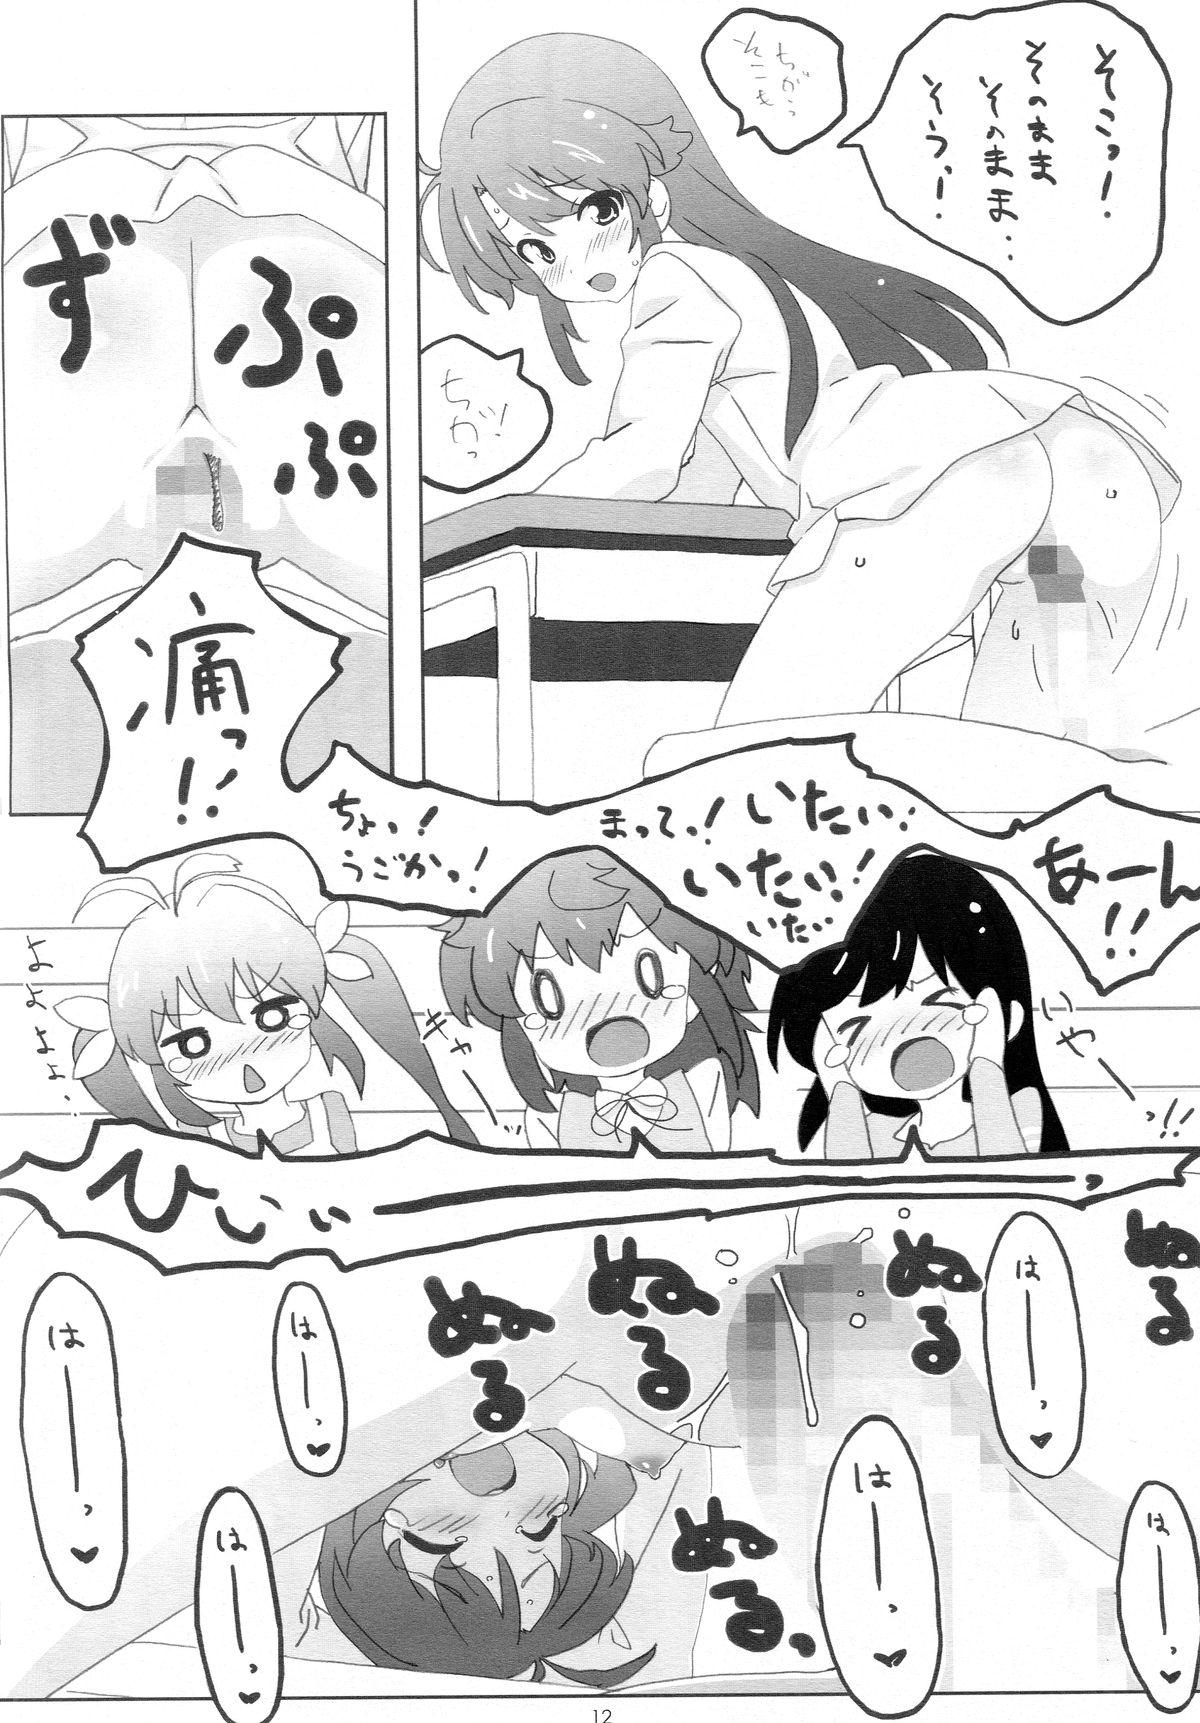 Spreading Moshikashite......Uchi, Inaka ni Sunderu Non? - Non non biyori Barely 18 Porn - Page 11